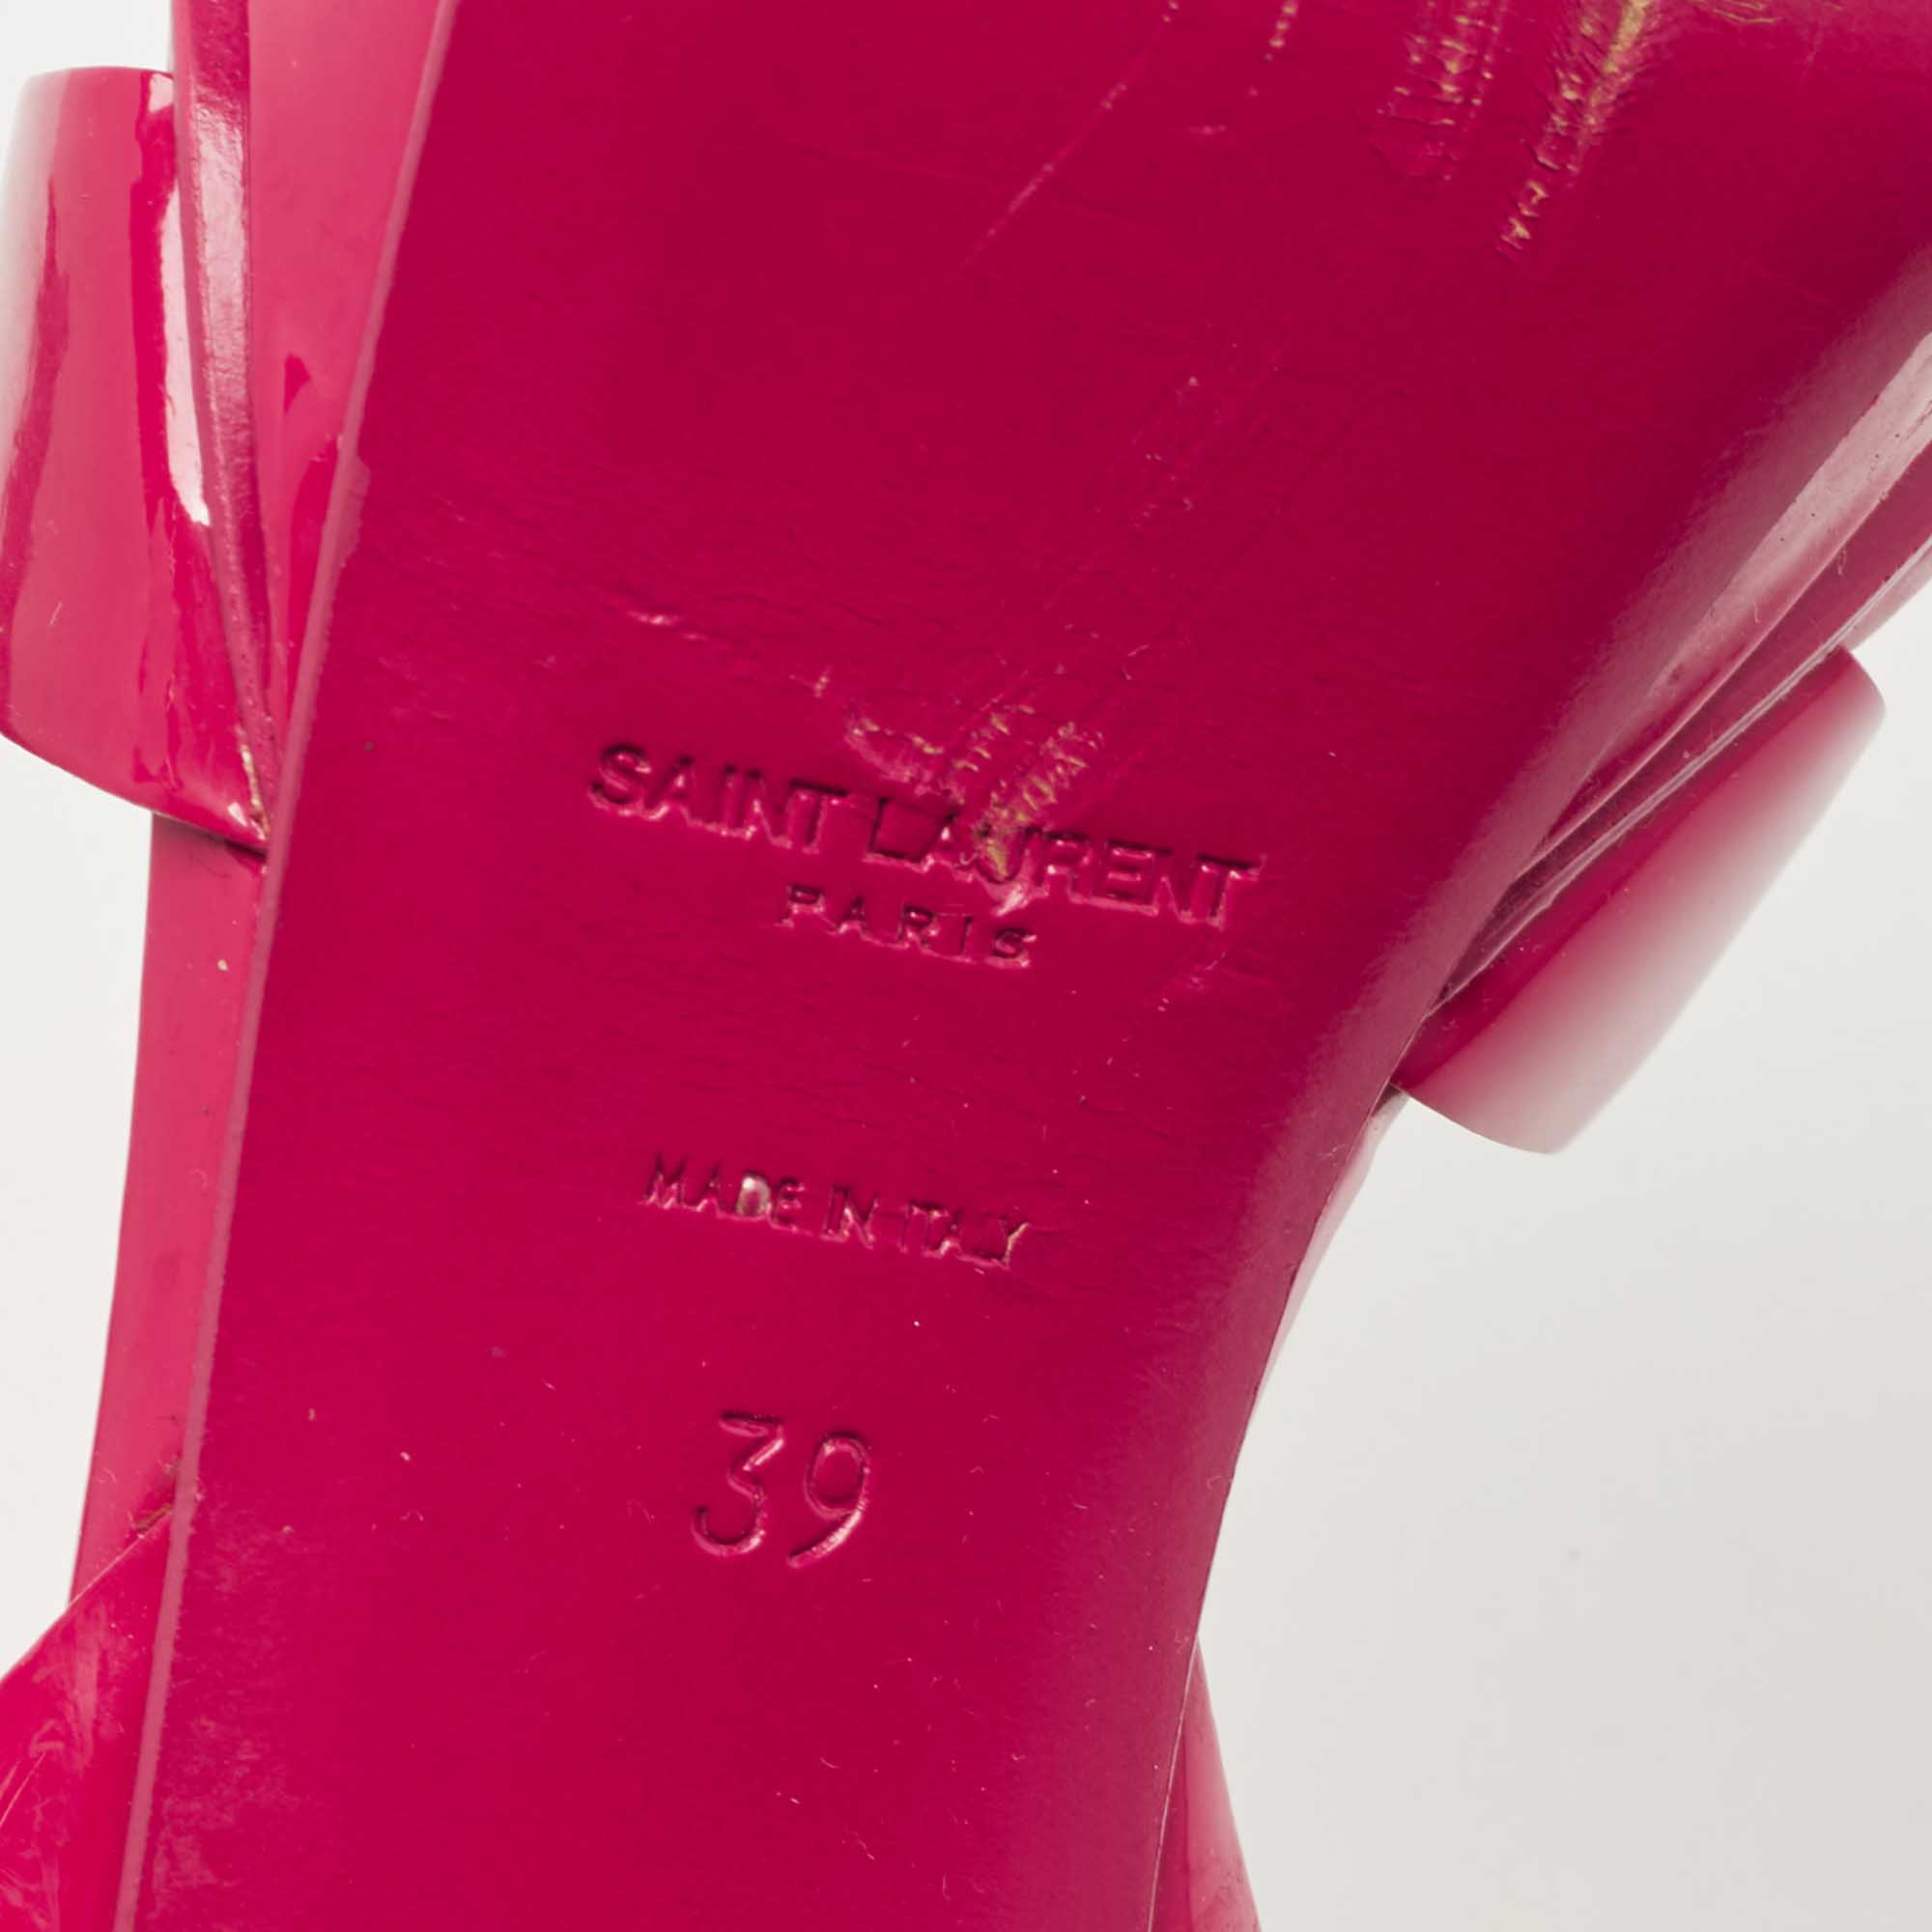 Saint Laurent Pink Patent Leather Tribute Sandals Size 39